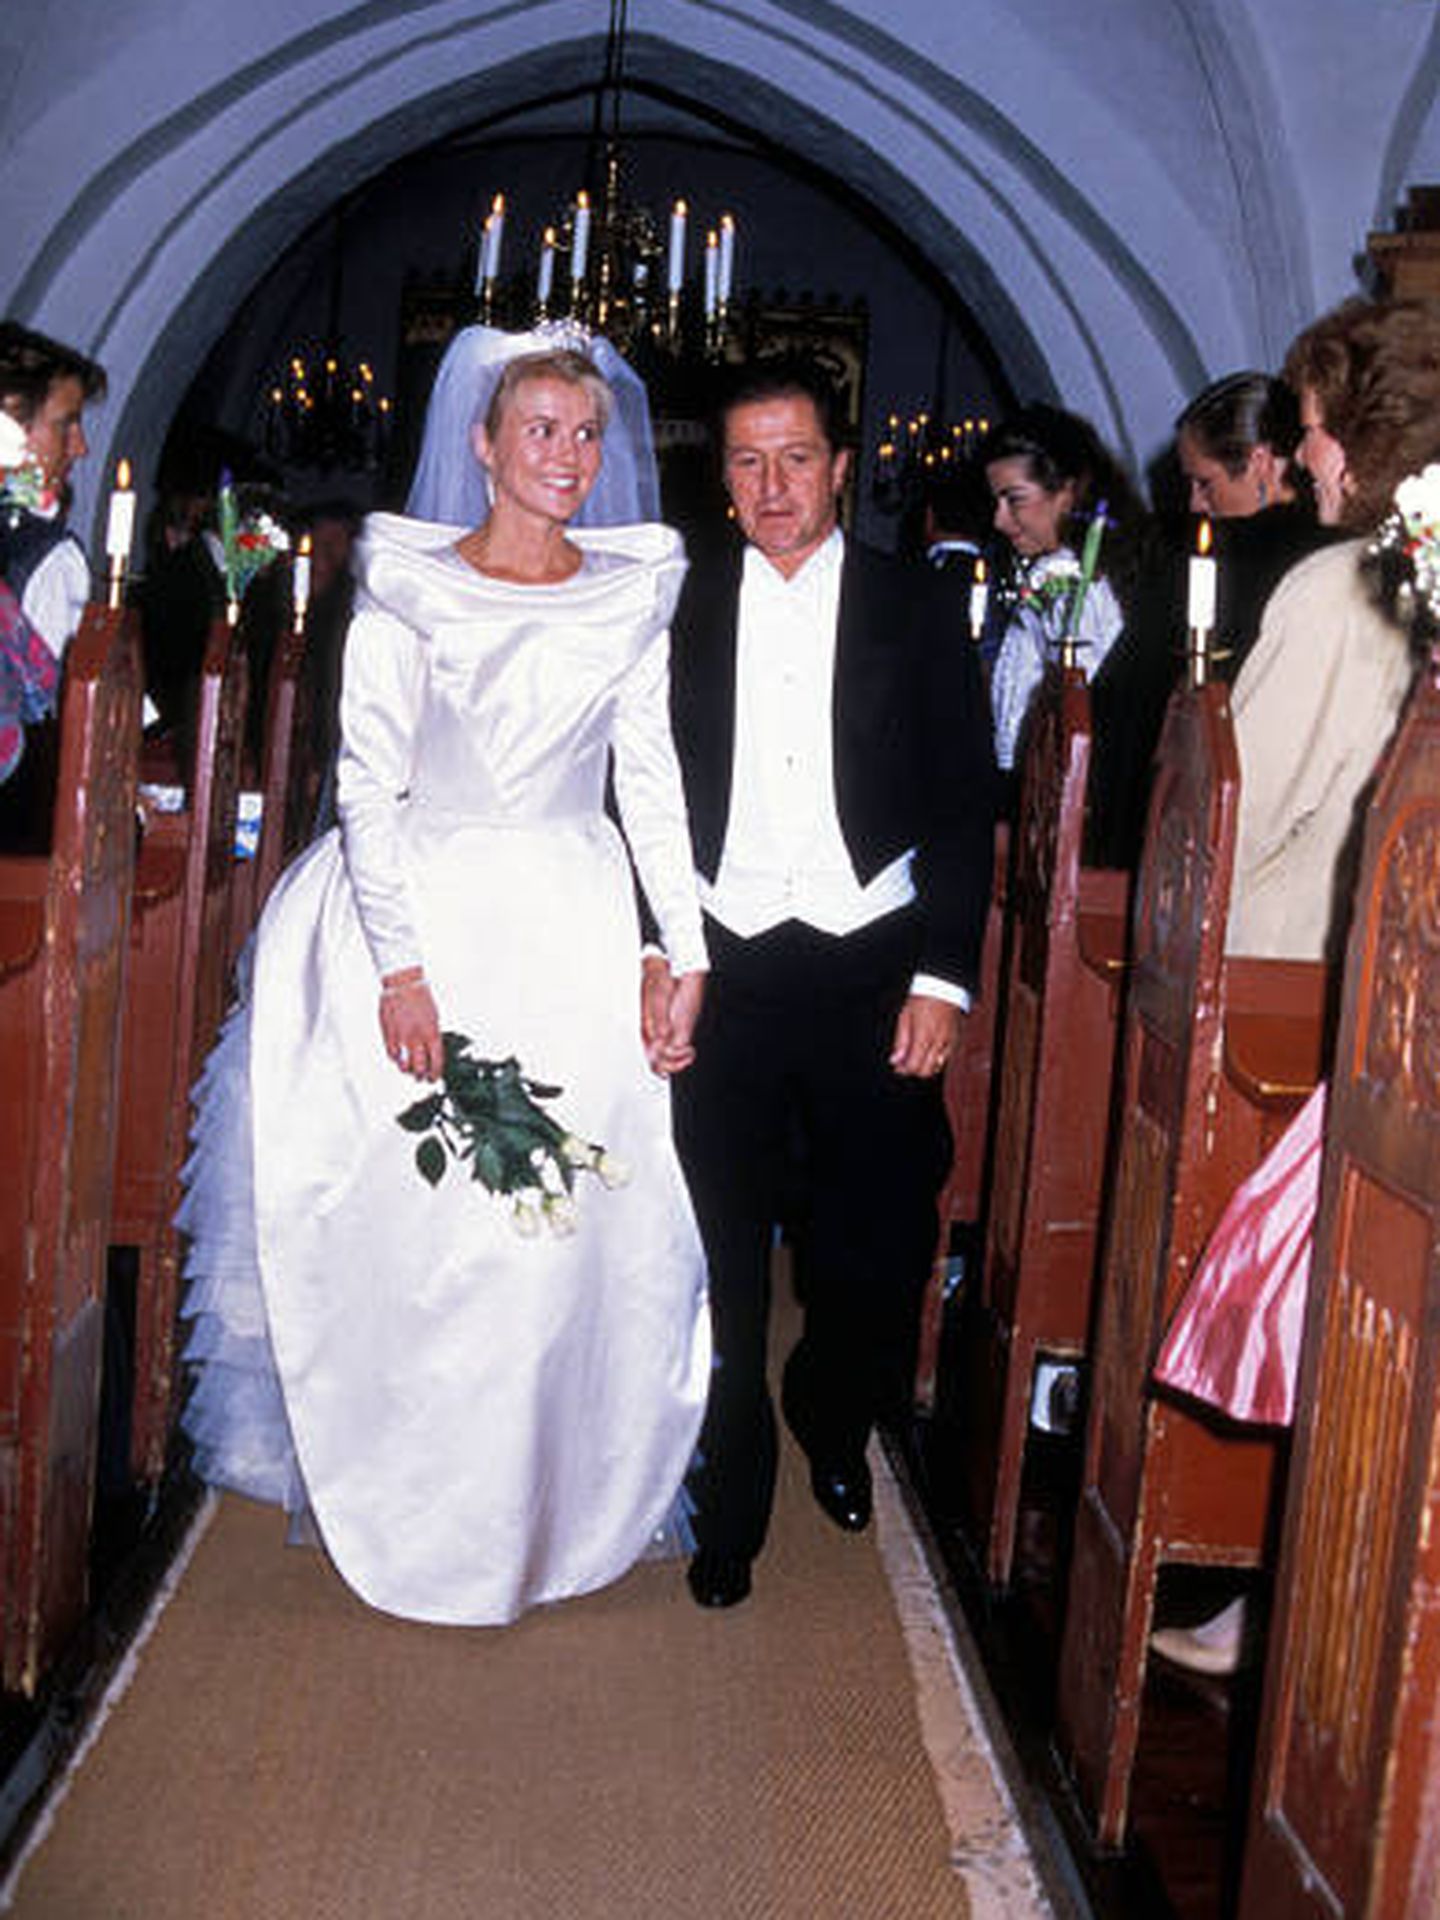 La boda de sus padres, en octubre de 1987. (Getty)